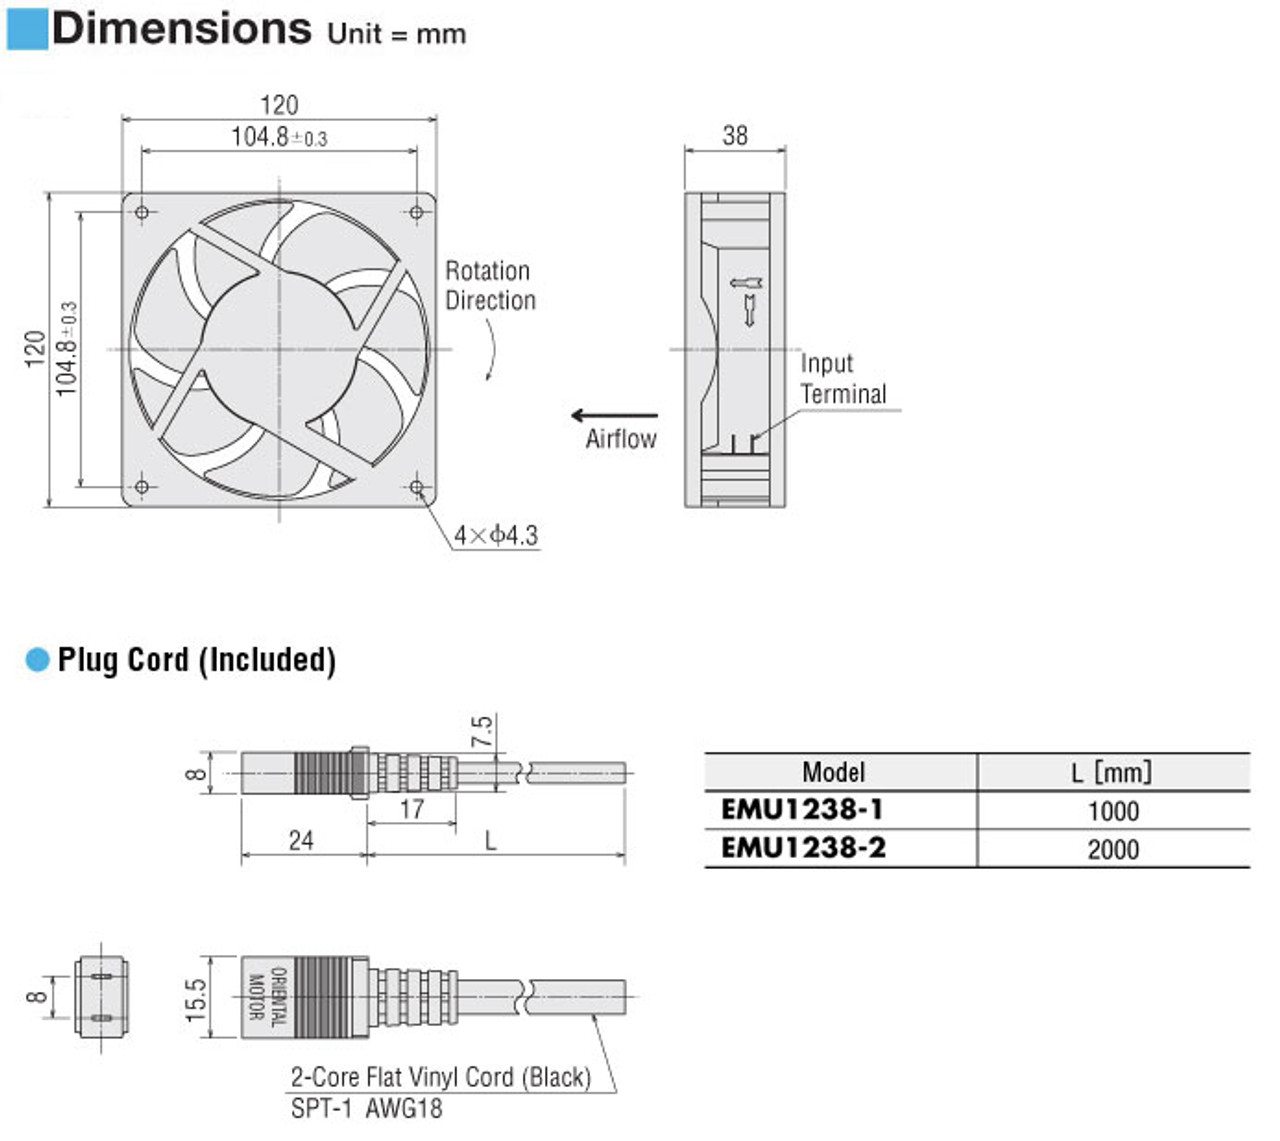 EMU1238-2 - Dimensions